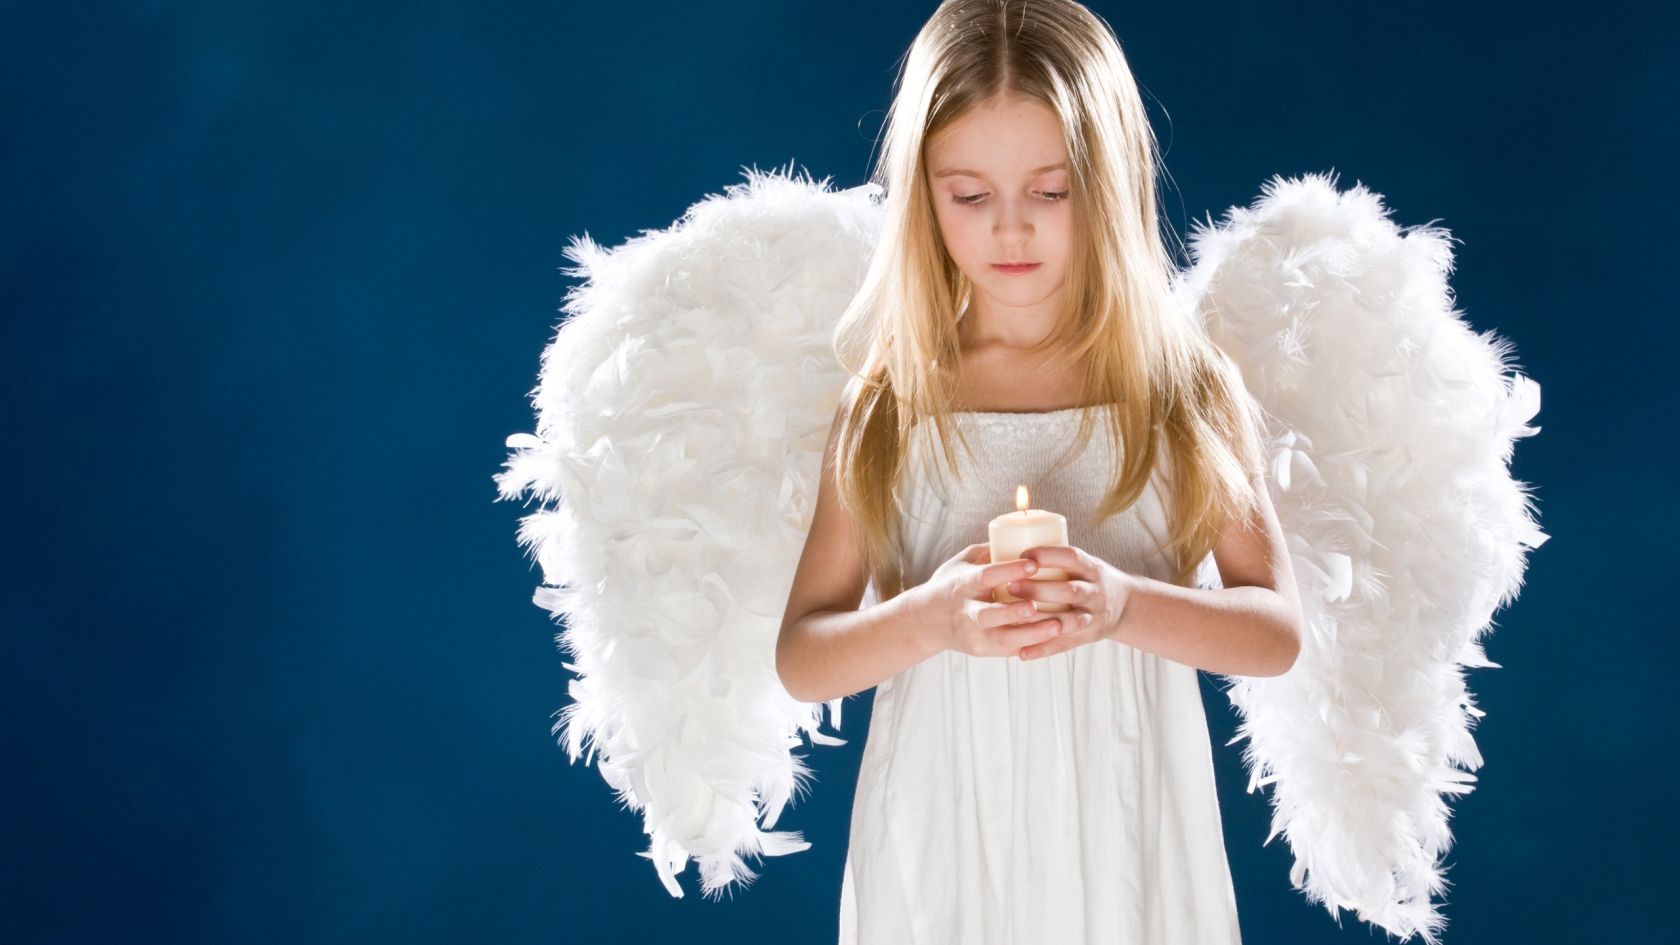 Little Angel Girl for 1680 x 945 HDTV resolution